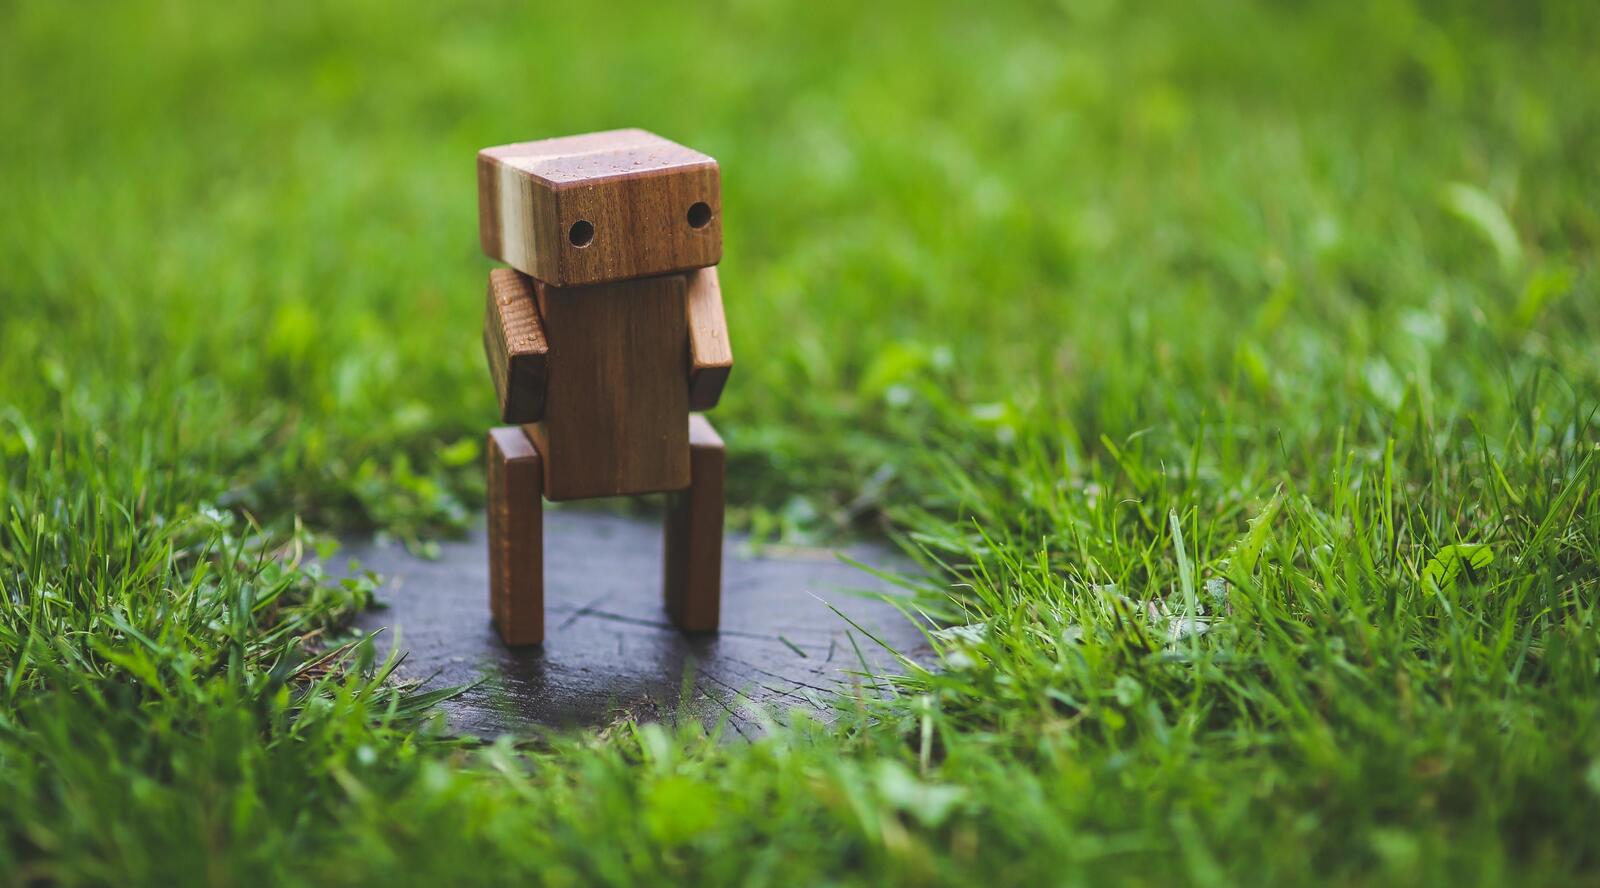 Бесплатное фото Маленький робот из дерева стоит на зеленом газоне